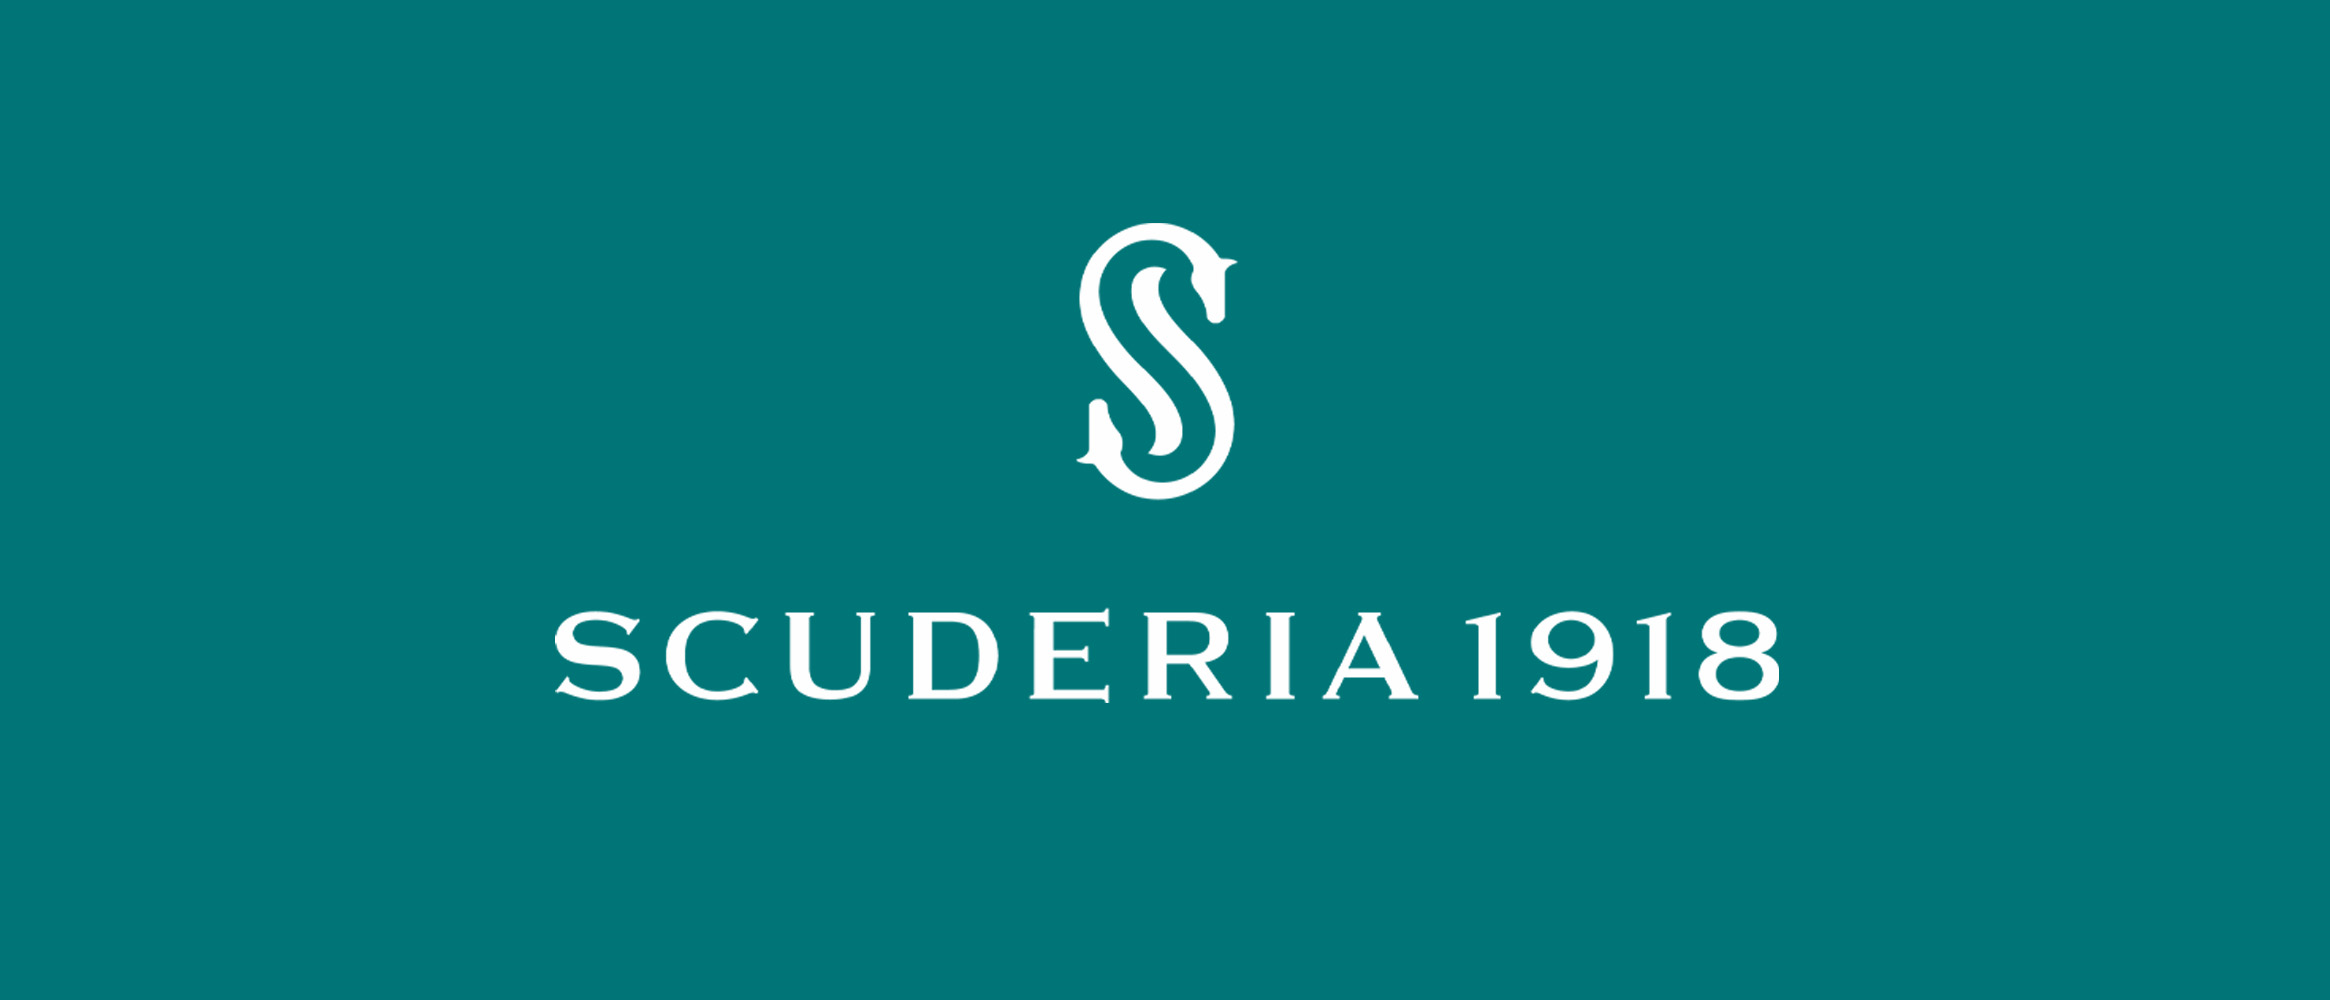 scuderia 1918